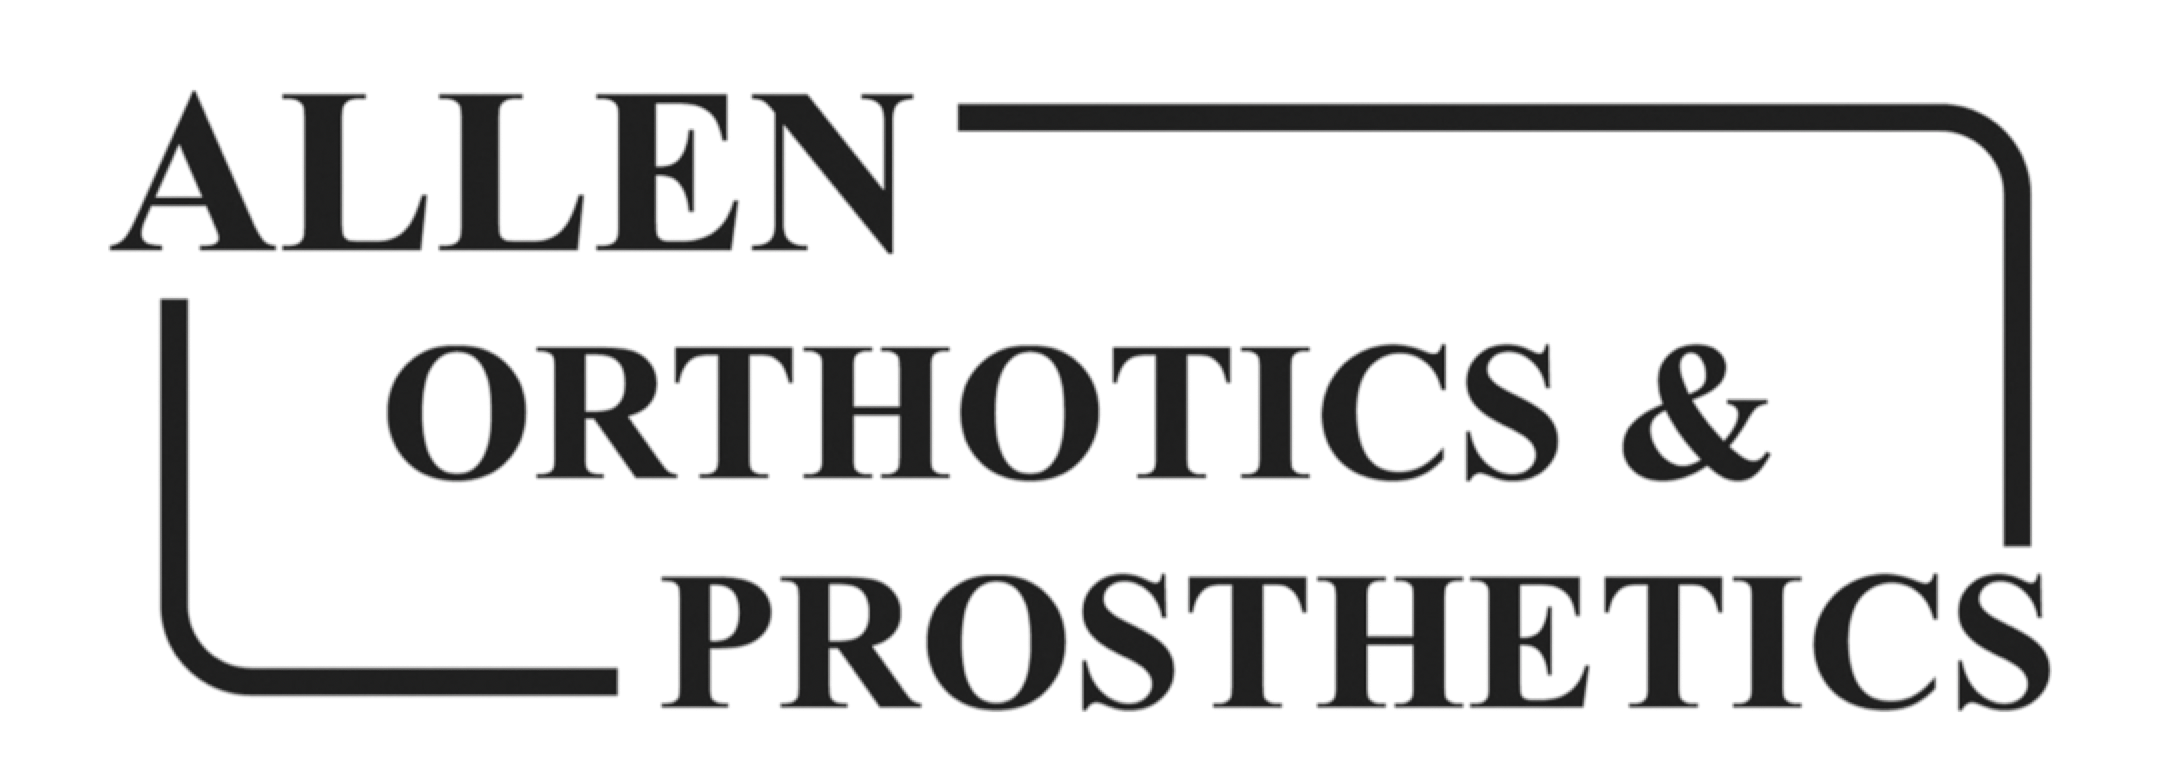 Allen Orthotics & Prosthetics